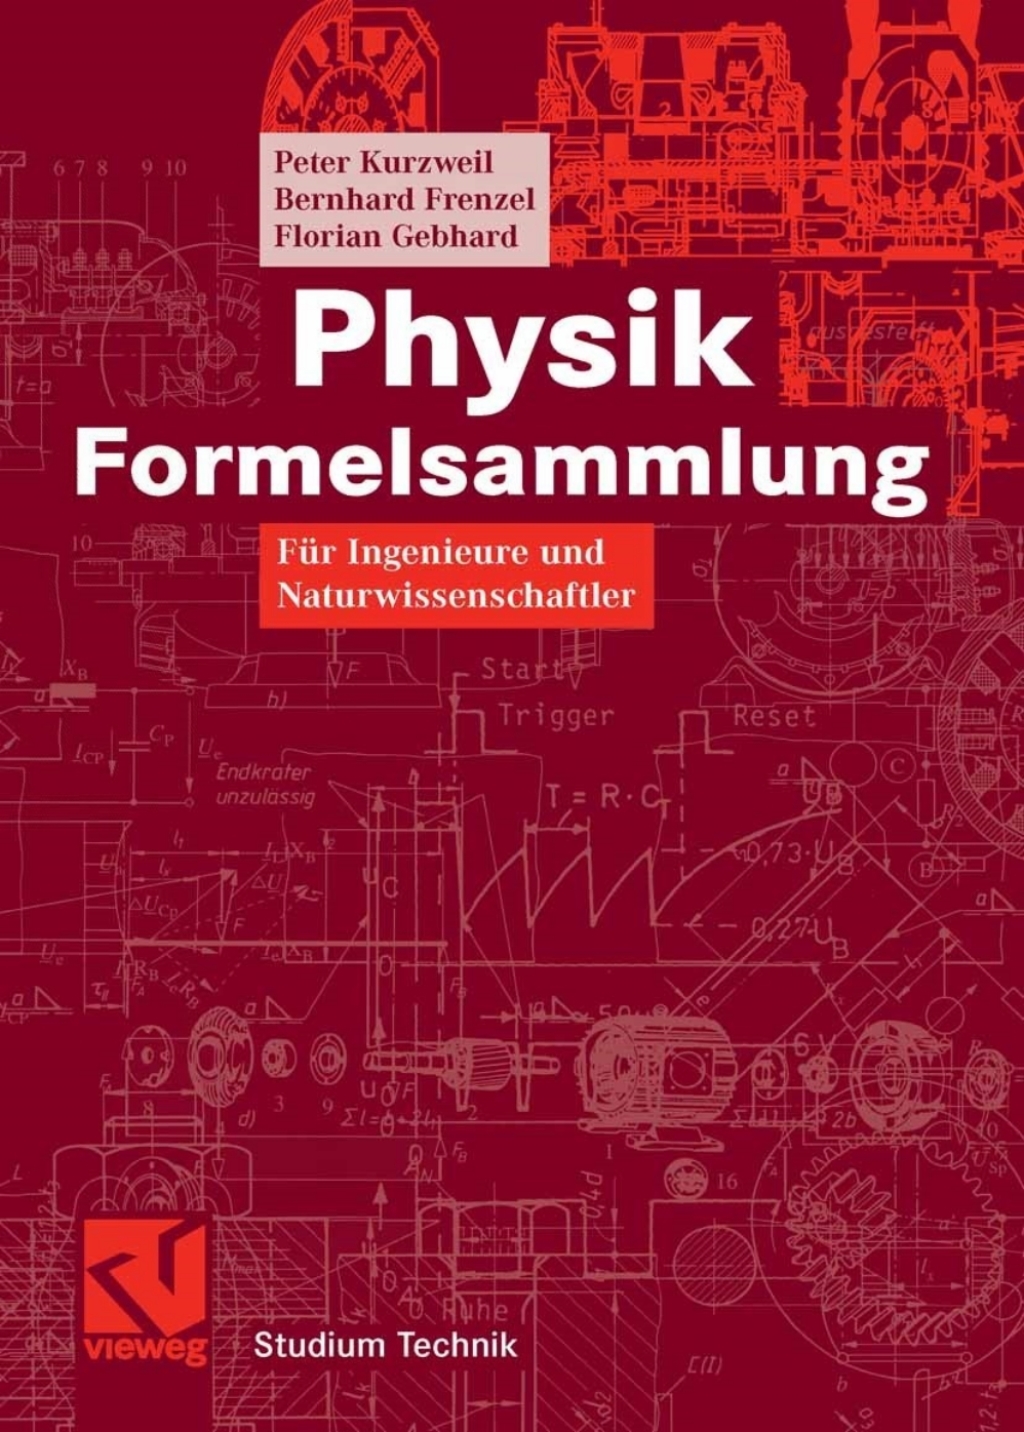 Physik Formelsammlung (eBook) - Peter Kurzweil; Bernhard Frenzel; Florian Gebhard,